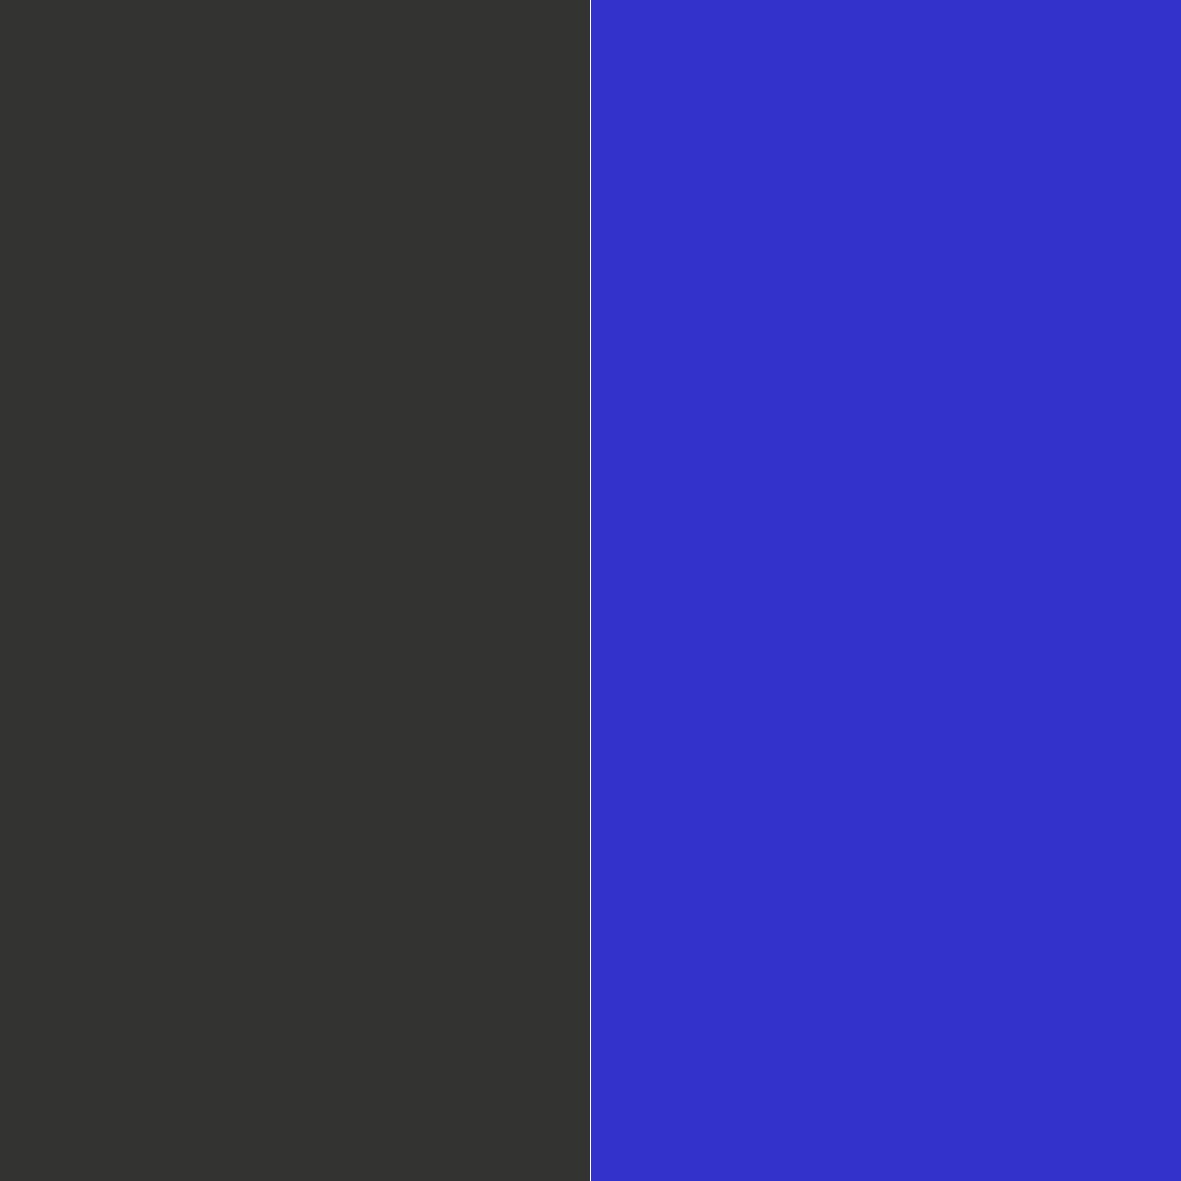 тёмно-серый/синий_333331/3333CC